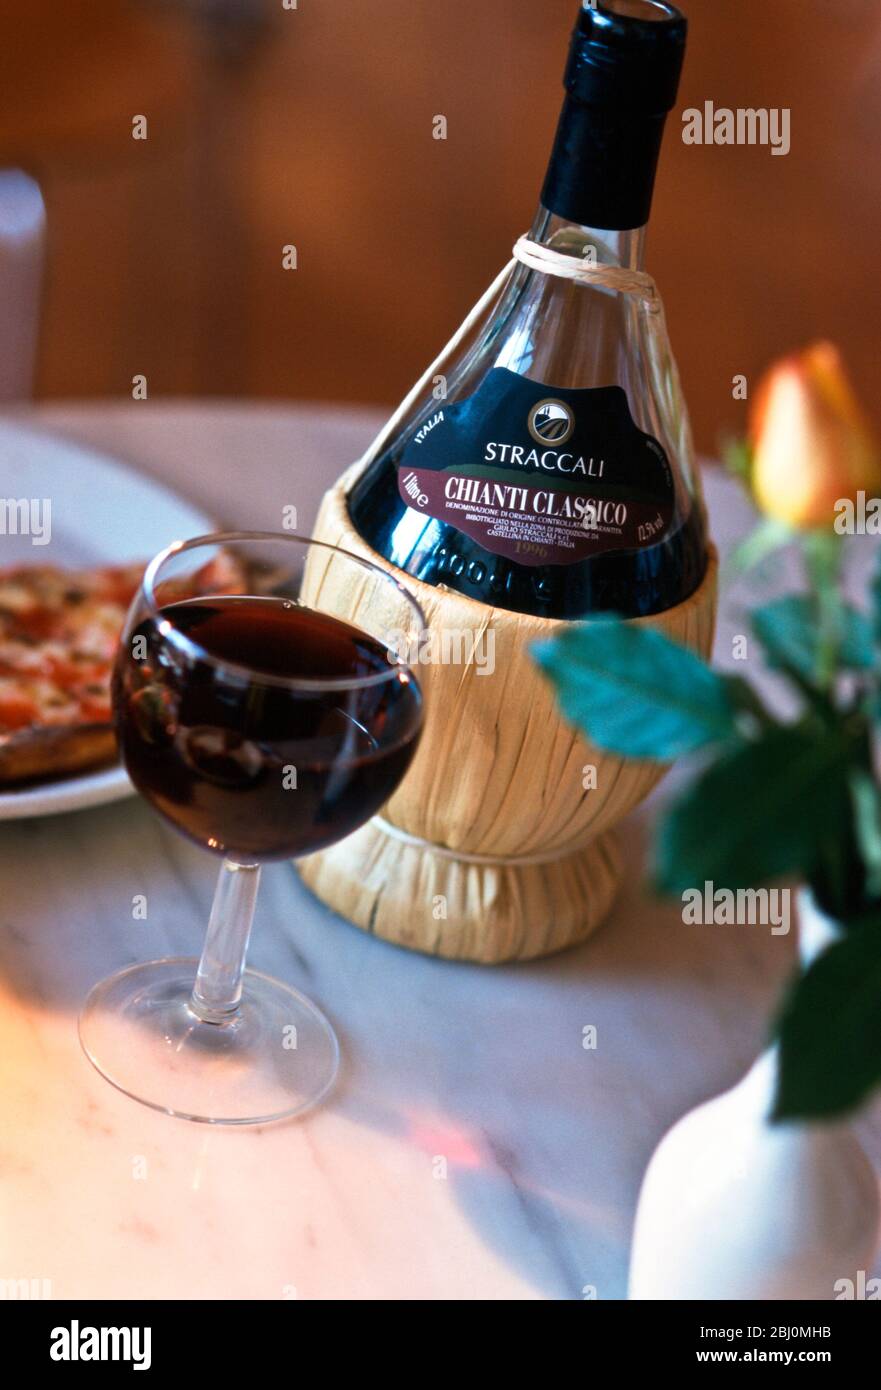 Eine Flasche Chianti auf dem Tisch des italienischen Restaurants - Stockfoto